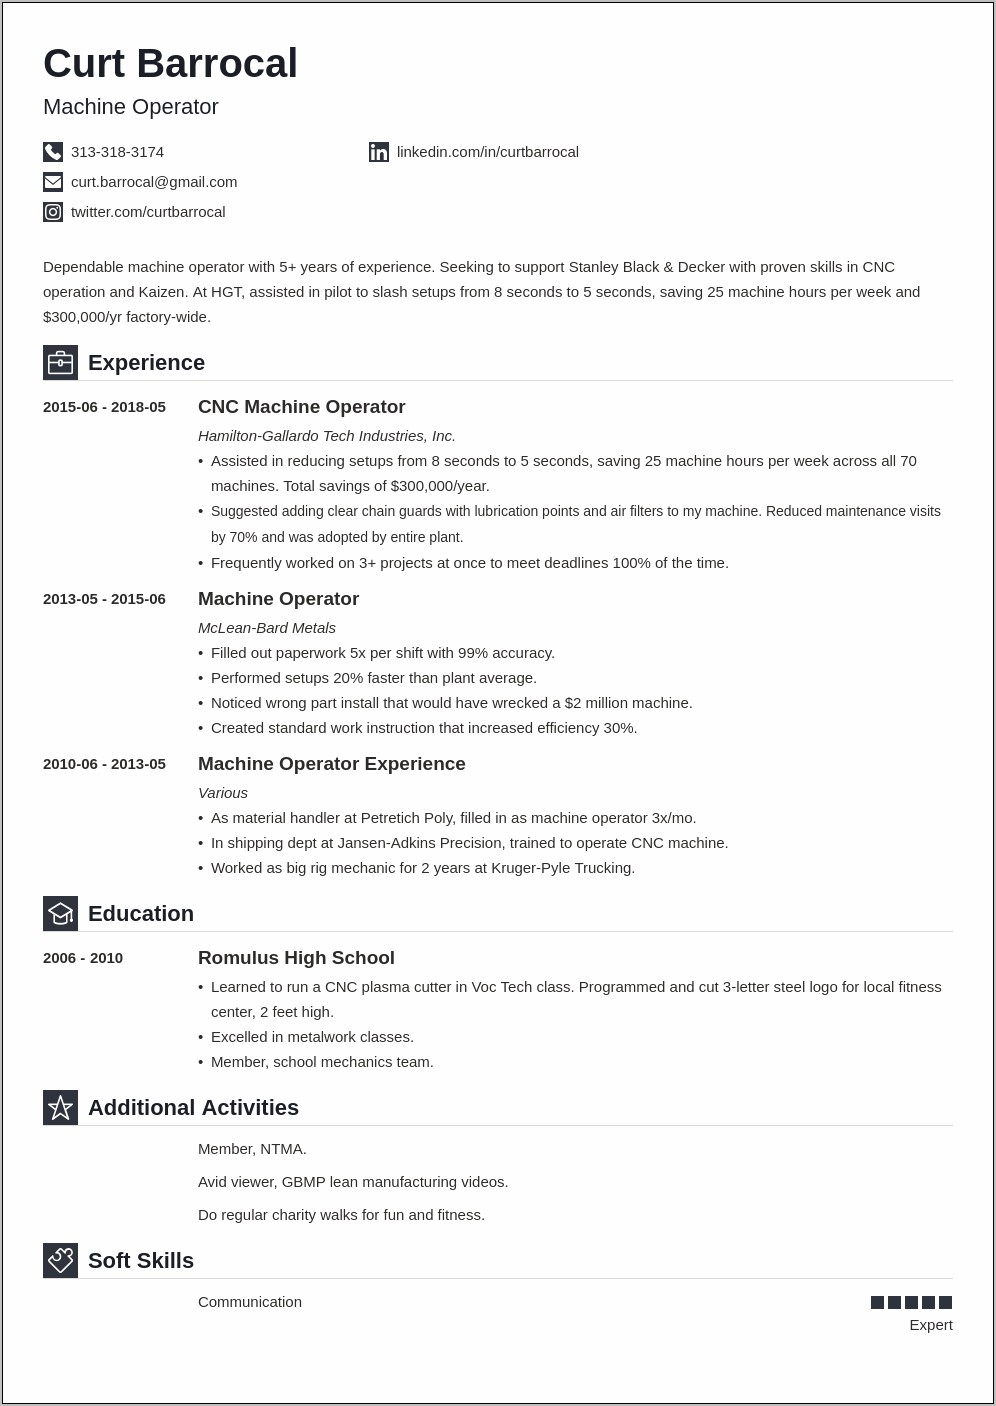 Automotive Assembly Line Worker Job Description Resume